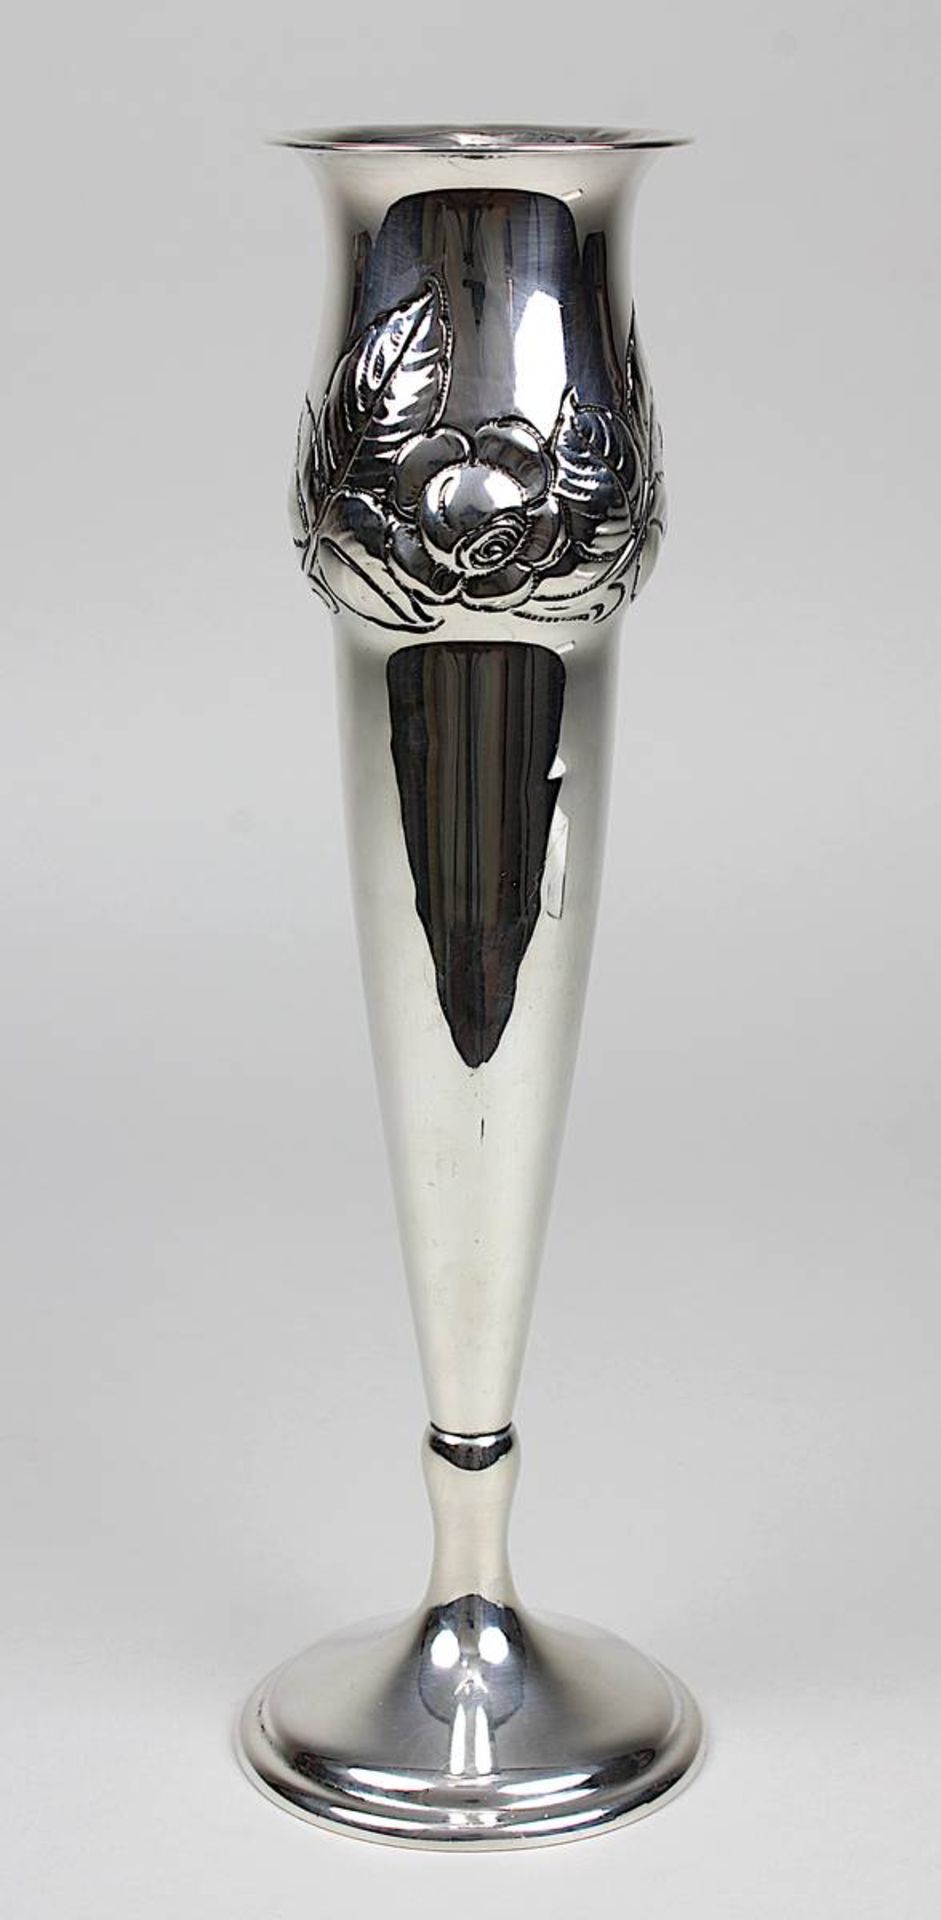 Vase aus 830er Silber, um 1930, hohe Kelchform, Schulter mit reliefiertem Rosendekor, im Boden geste - Bild 2 aus 2